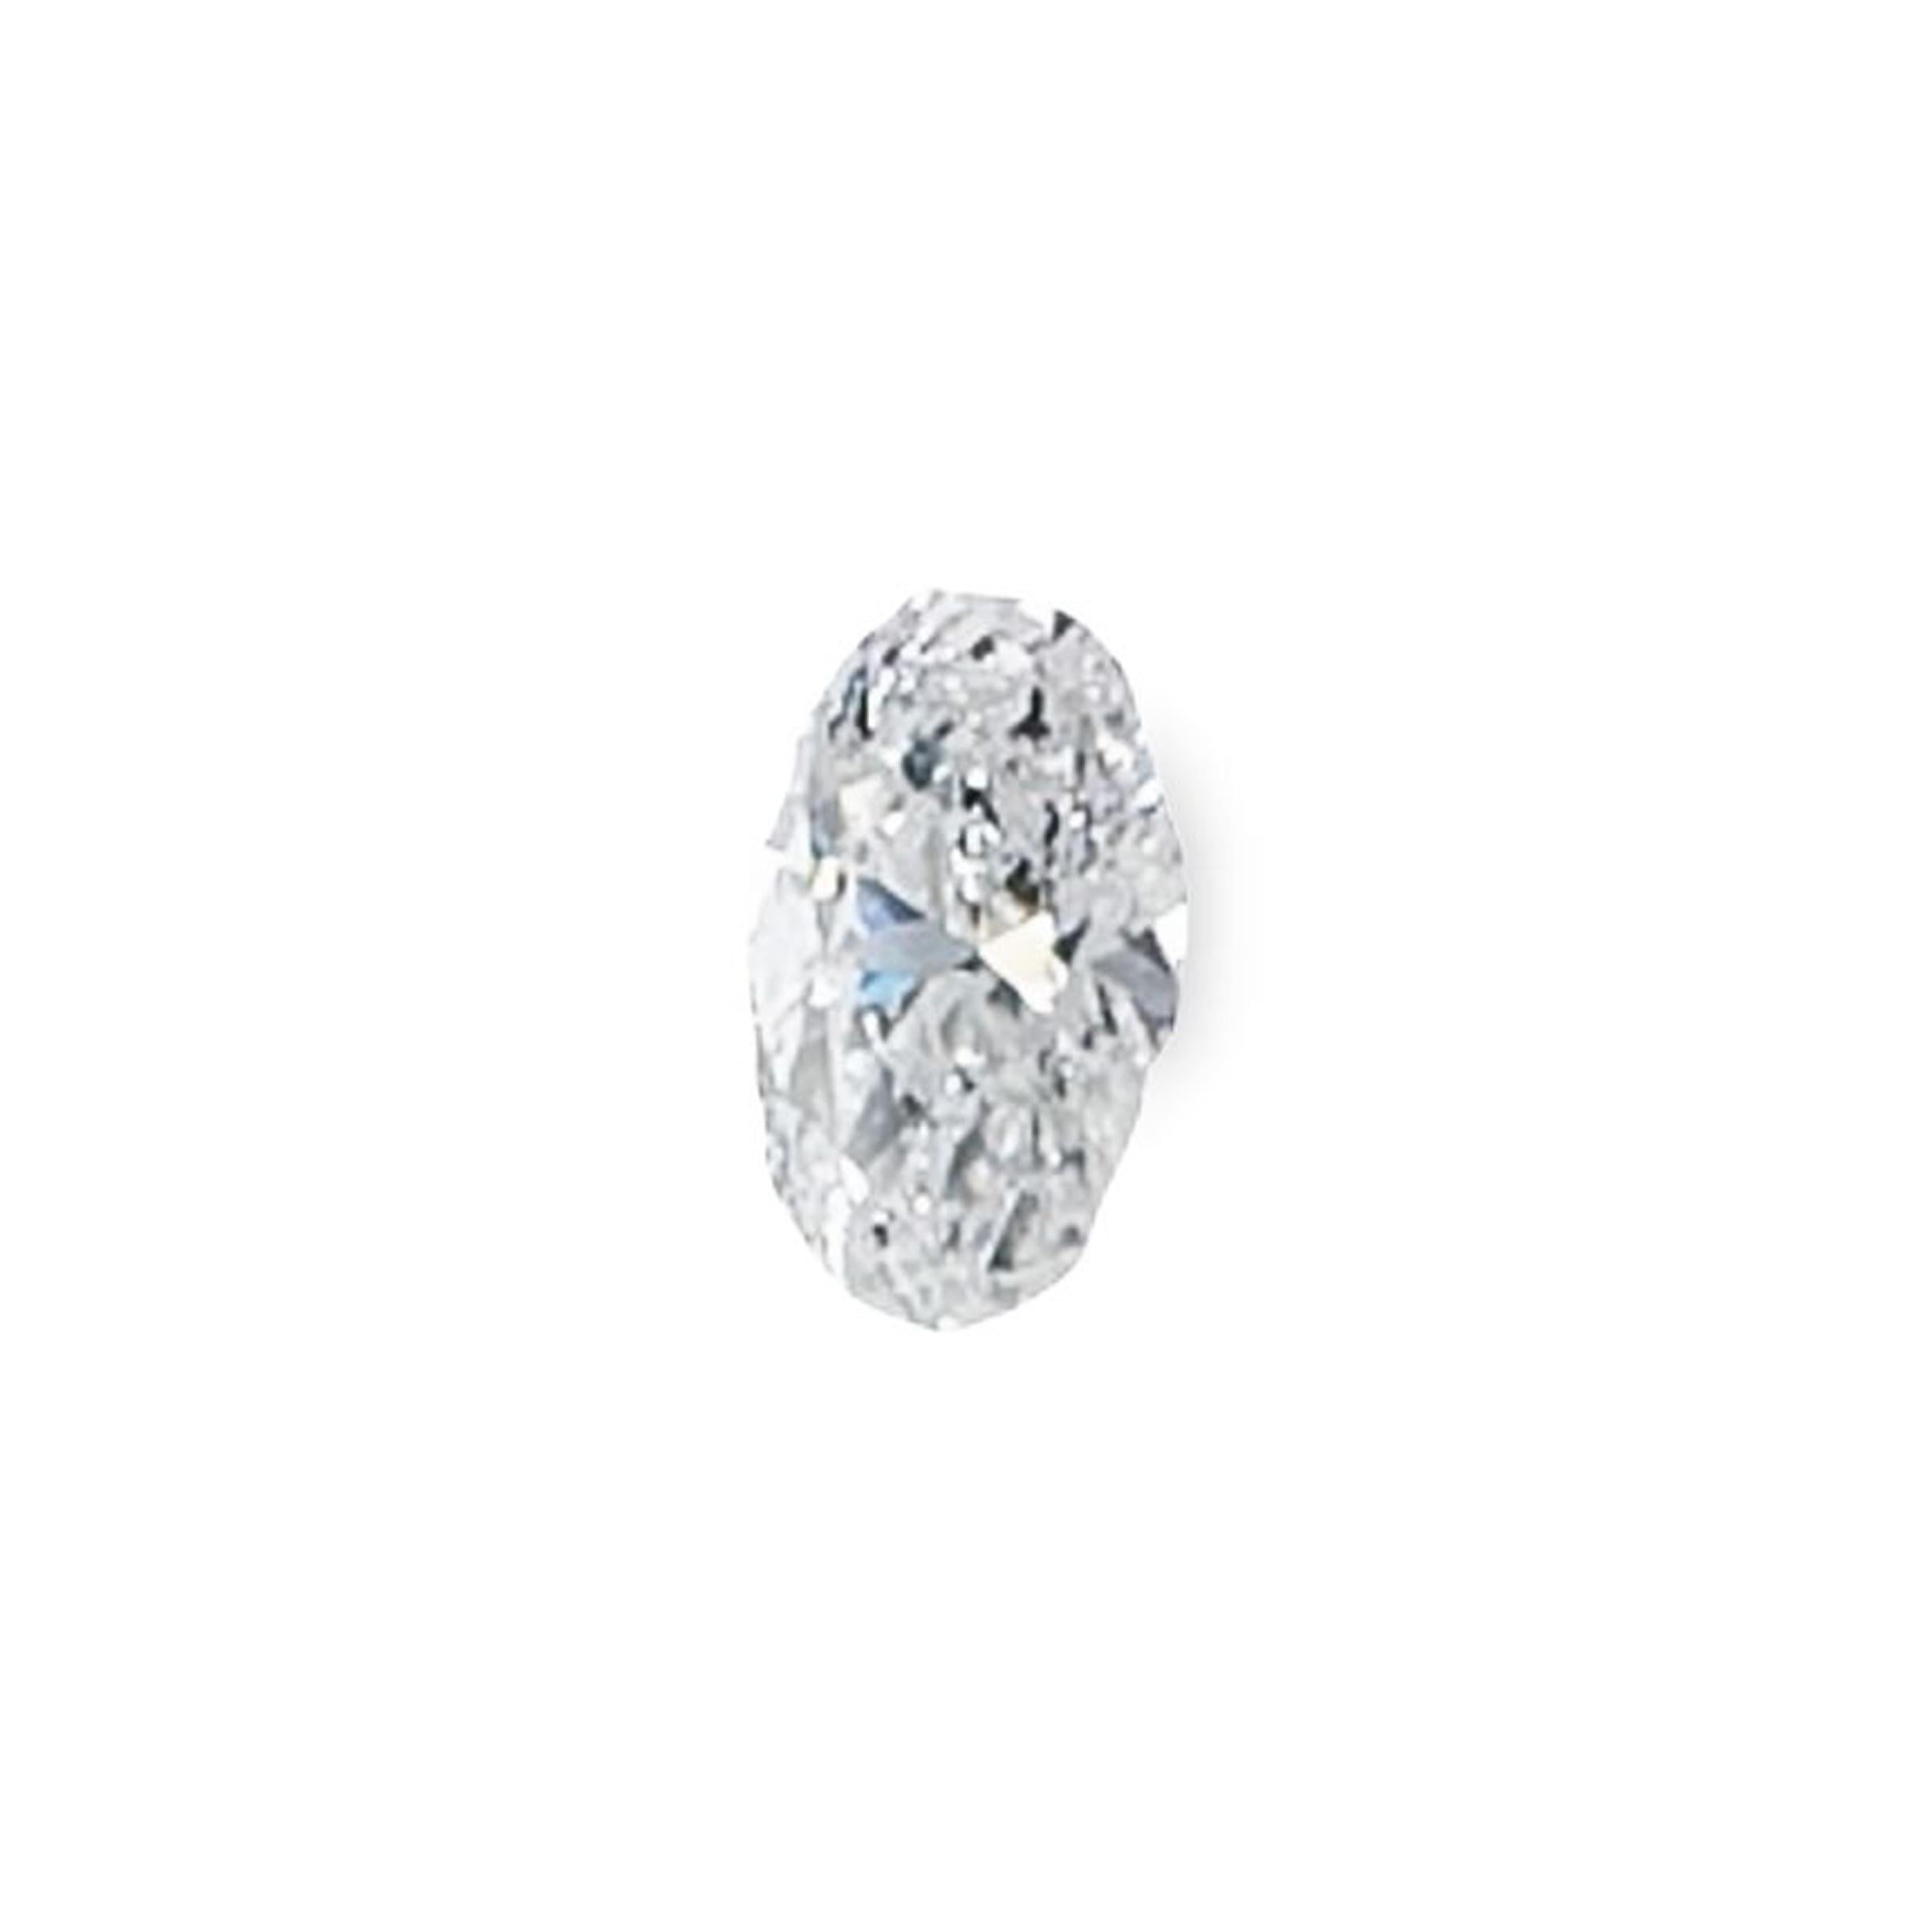 Diamant oval incolore de 1,07 carat classé par la GIA (rapport #2225850553) comme étant de couleur D et de pureté I2.